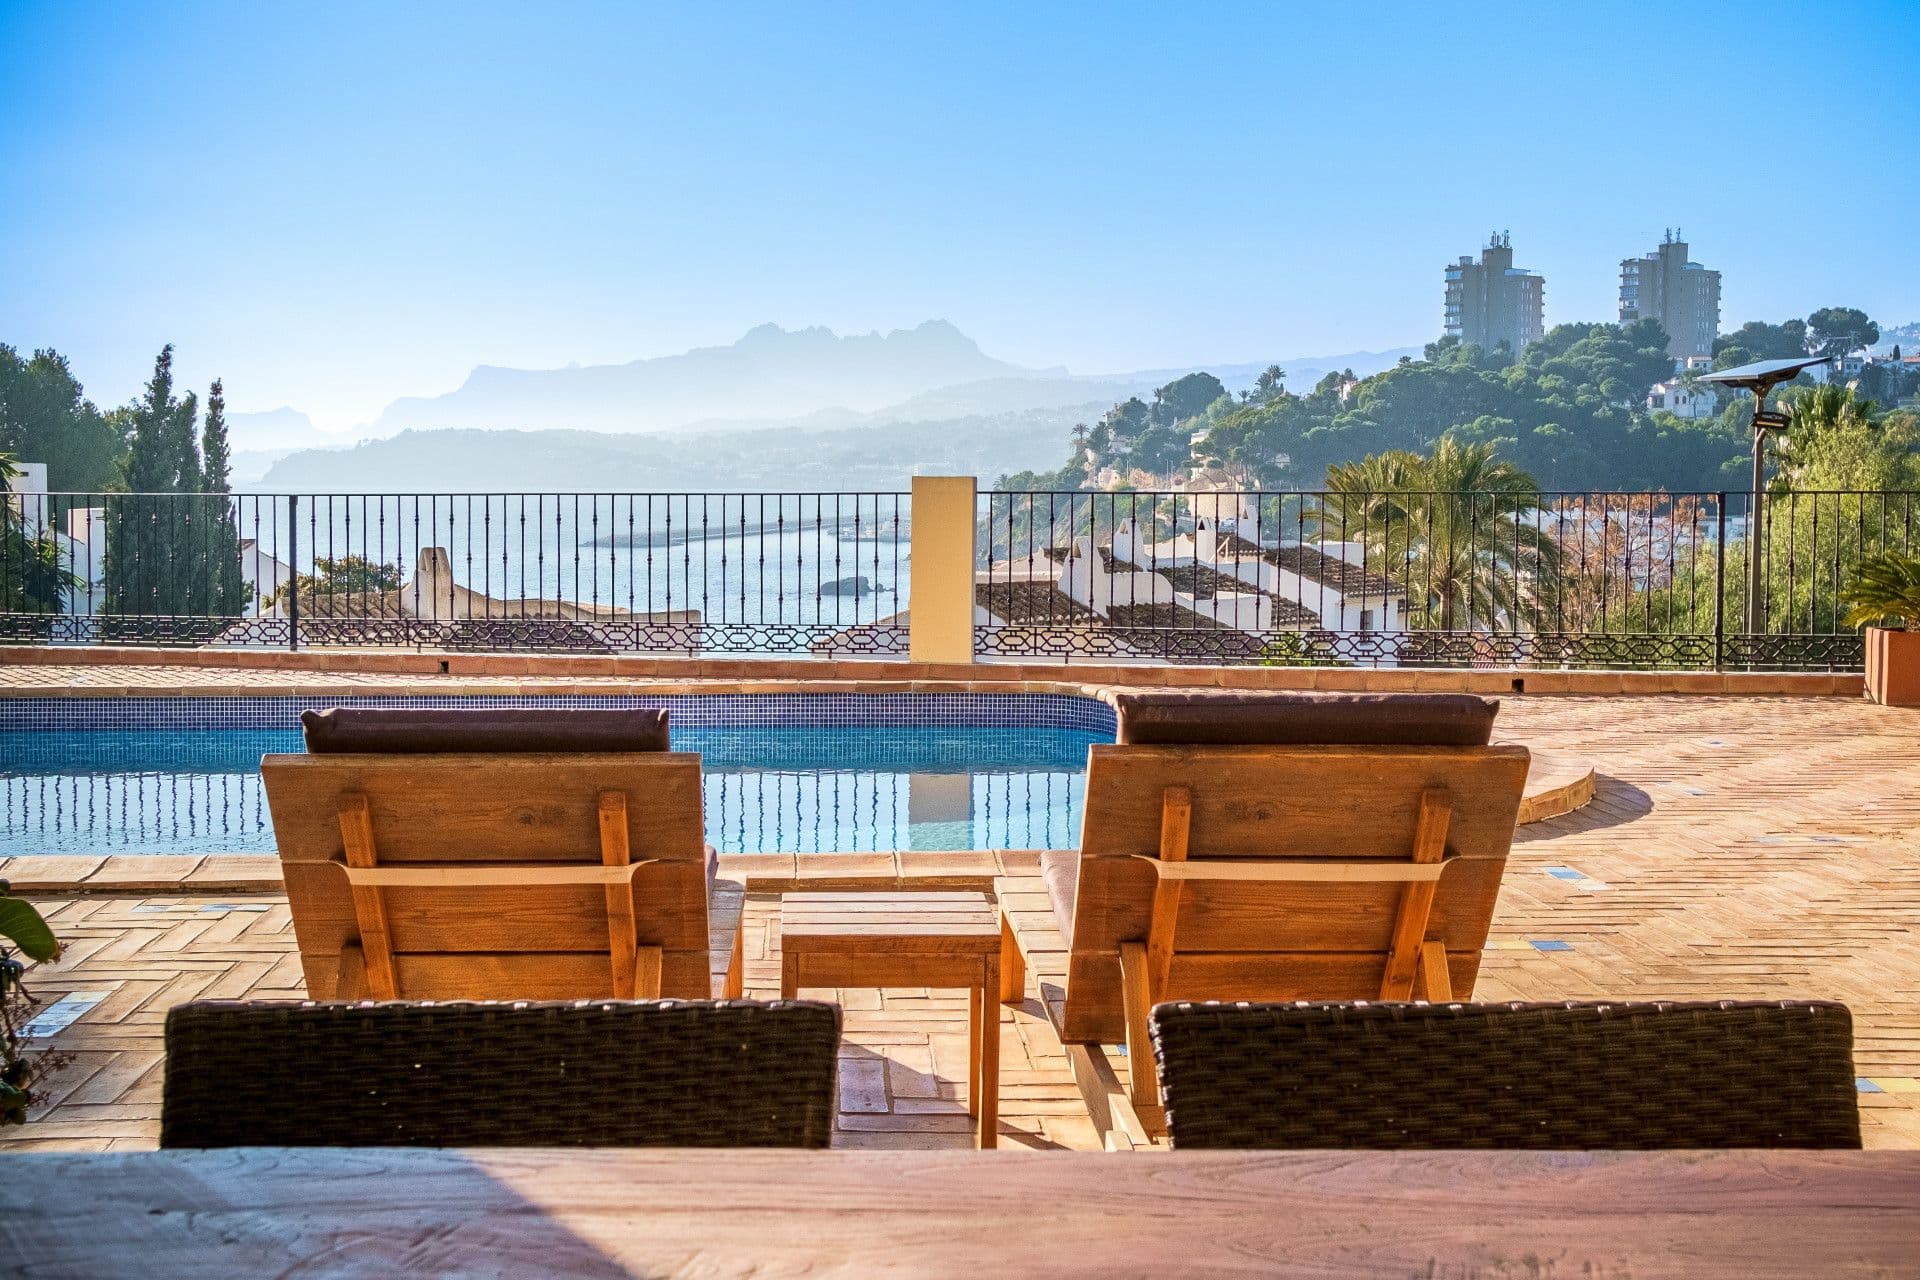 Villa im mediterranen Stil mit Meerblick in Moraira, Alicante, nur wenige Meter vom Strand Portet entfernt